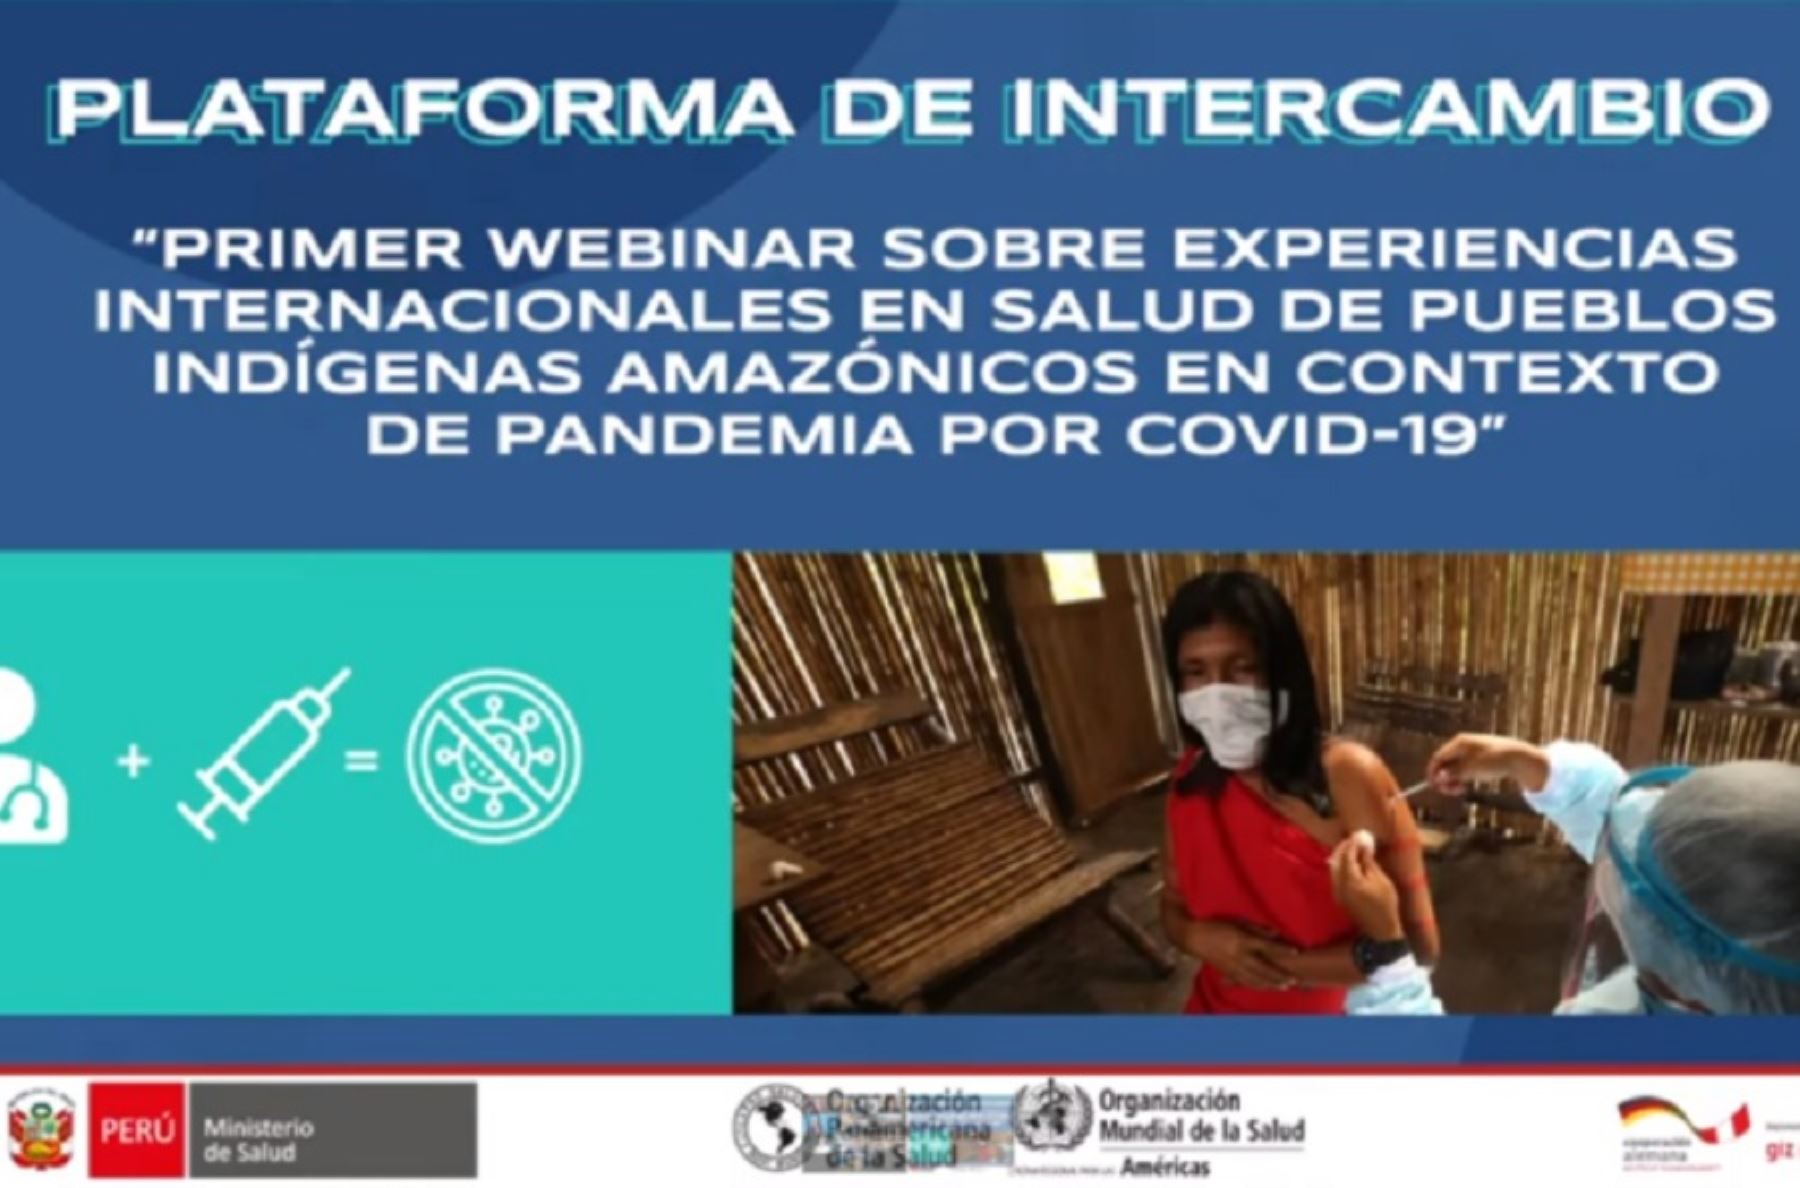 El Ministerio de Salud (Minsa) lideró el primer webinar de intercambio de experiencias en salud de los pueblos indígenas con acciones de los Estados y organismos supranacionales en mitigación, contención y vacunación contra la covid-19 en pueblos indígenas amazónicos de zona de frontera.